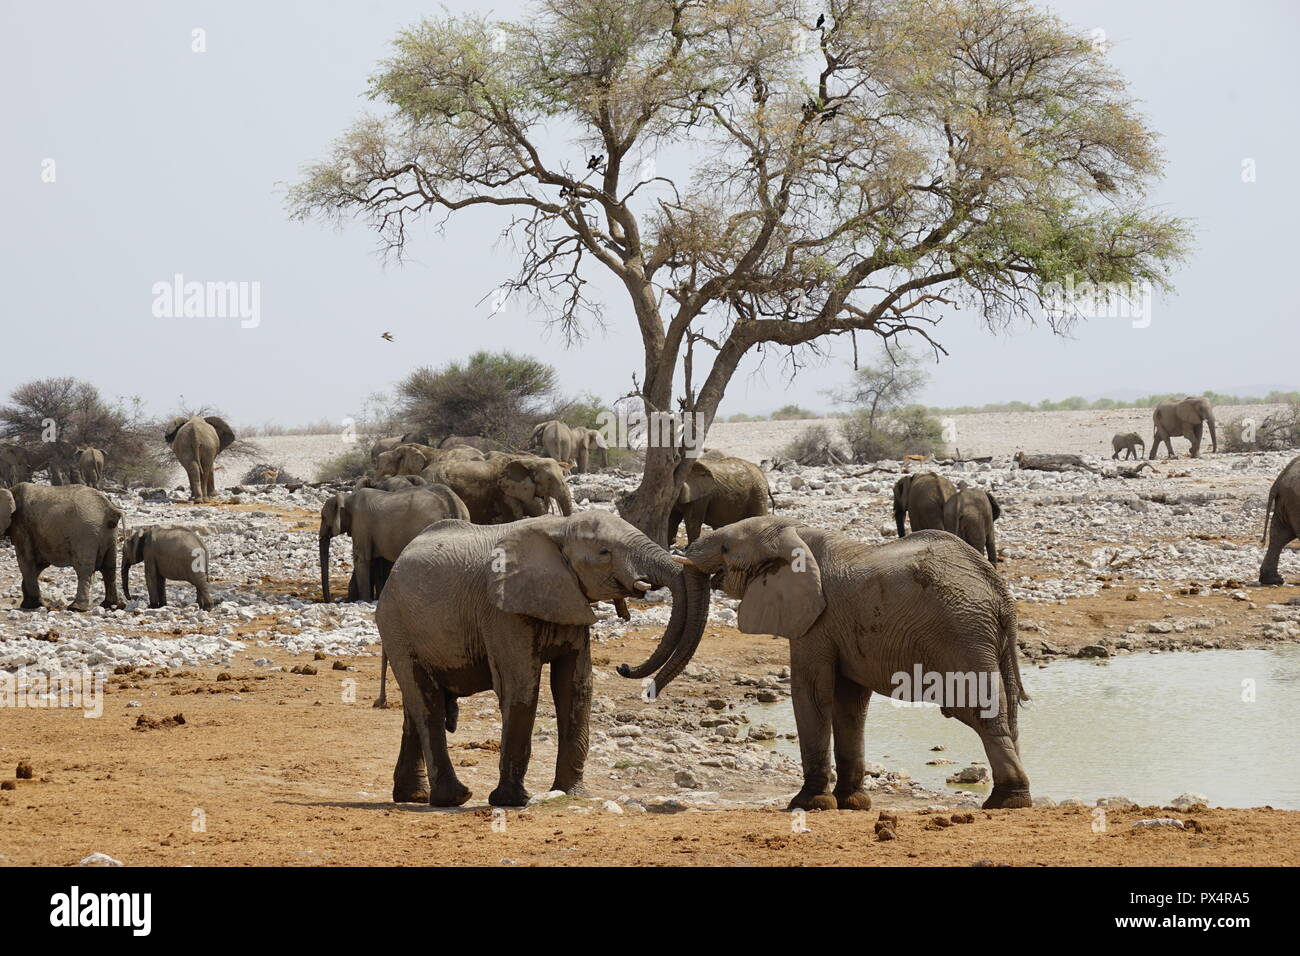 Spielerisch kämpfende junge Elefantenbullen, Okaukuejo Wasserloch, Etosha Nationalpark, Namibia, Afrika Foto Stock